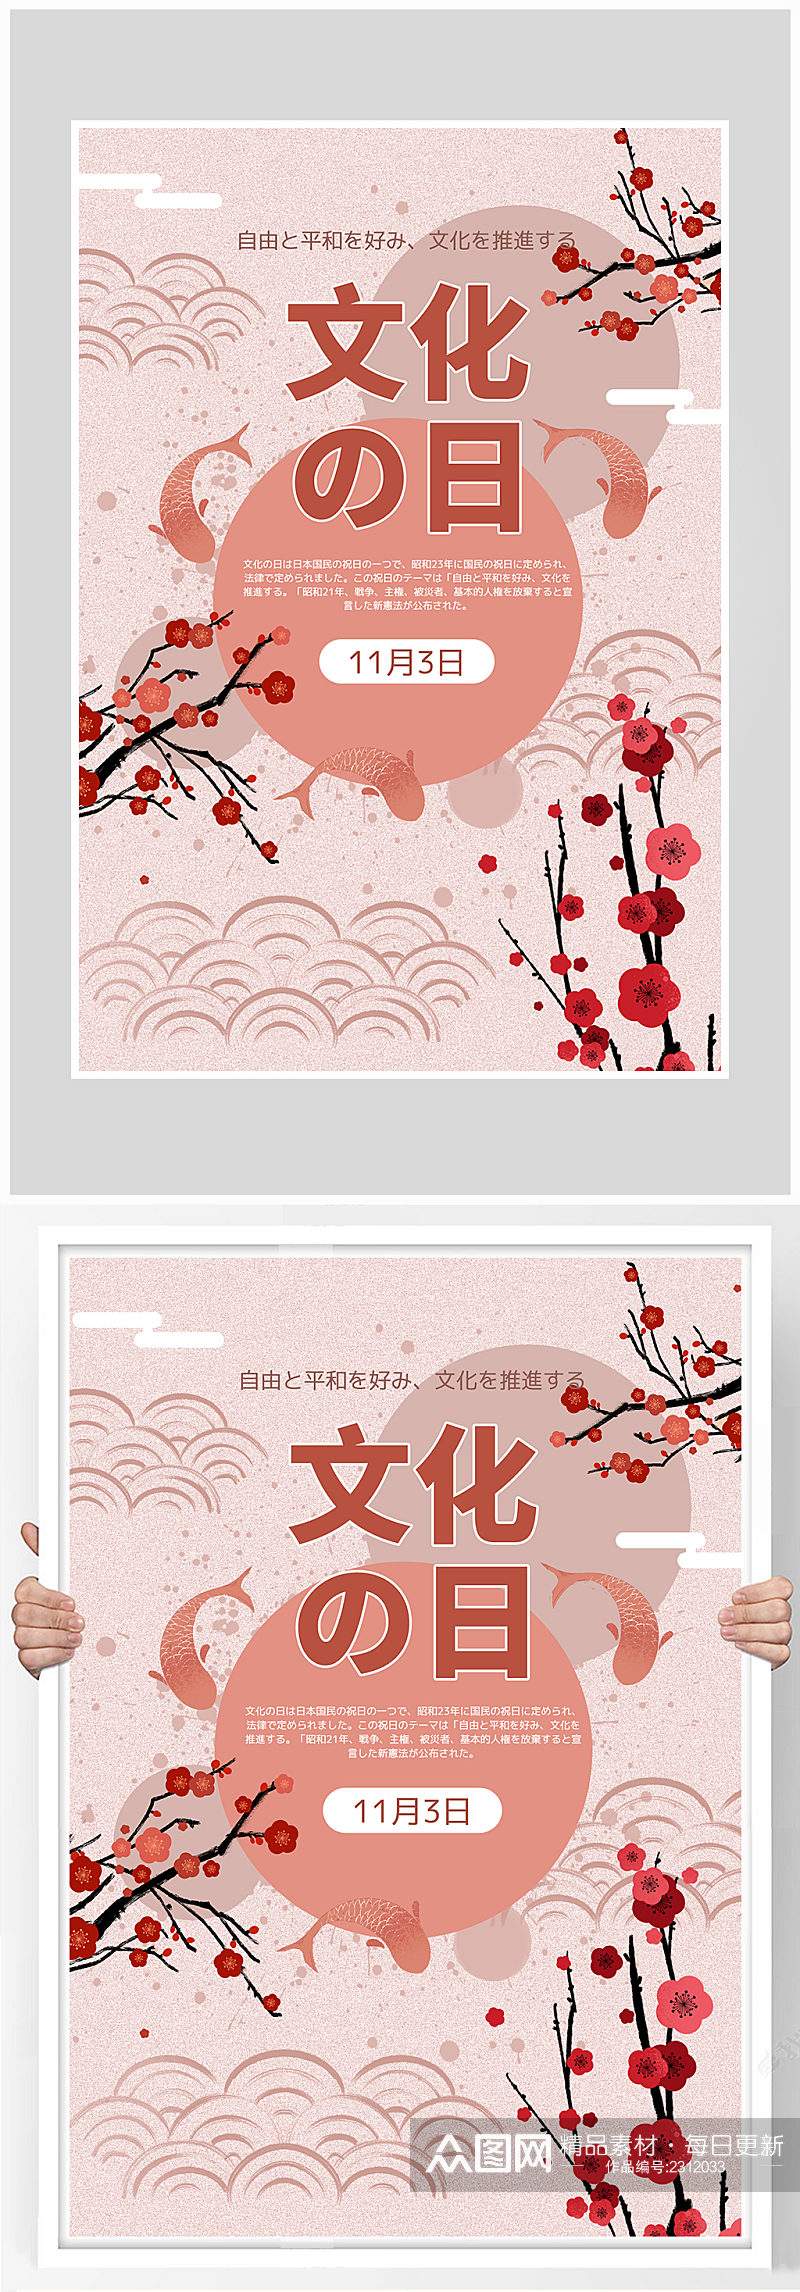 创意质感日式文化樱花海报设计素材